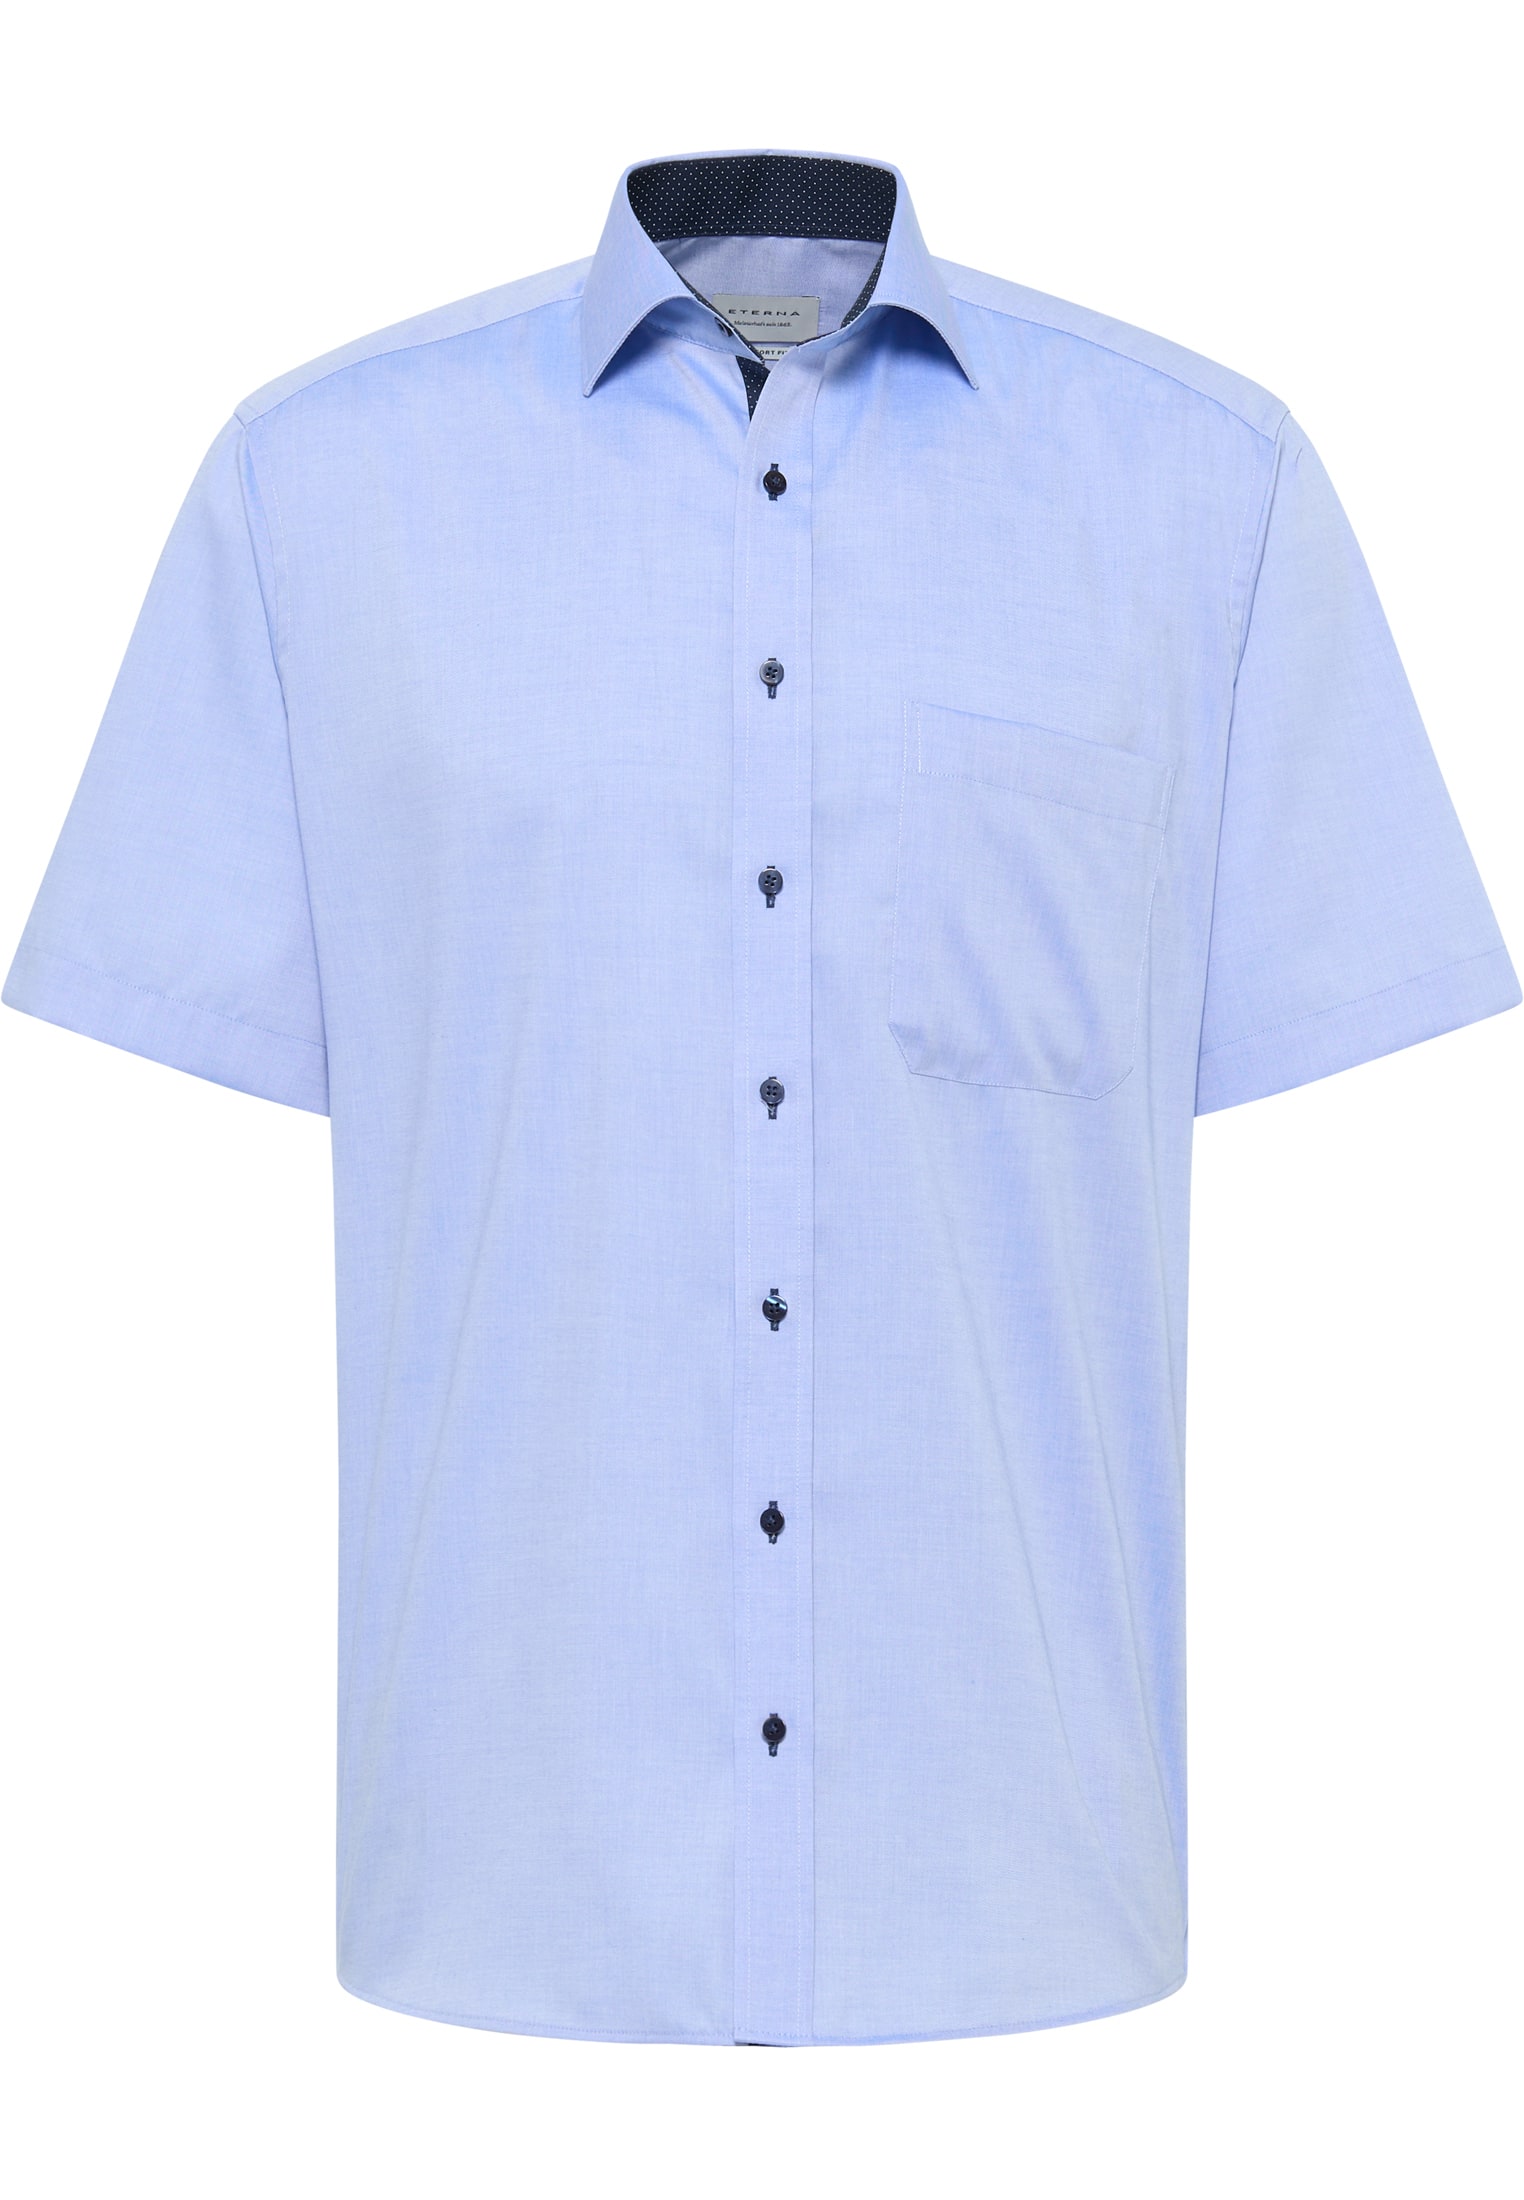 COMFORT FIT Overhemd in blauw vlakte